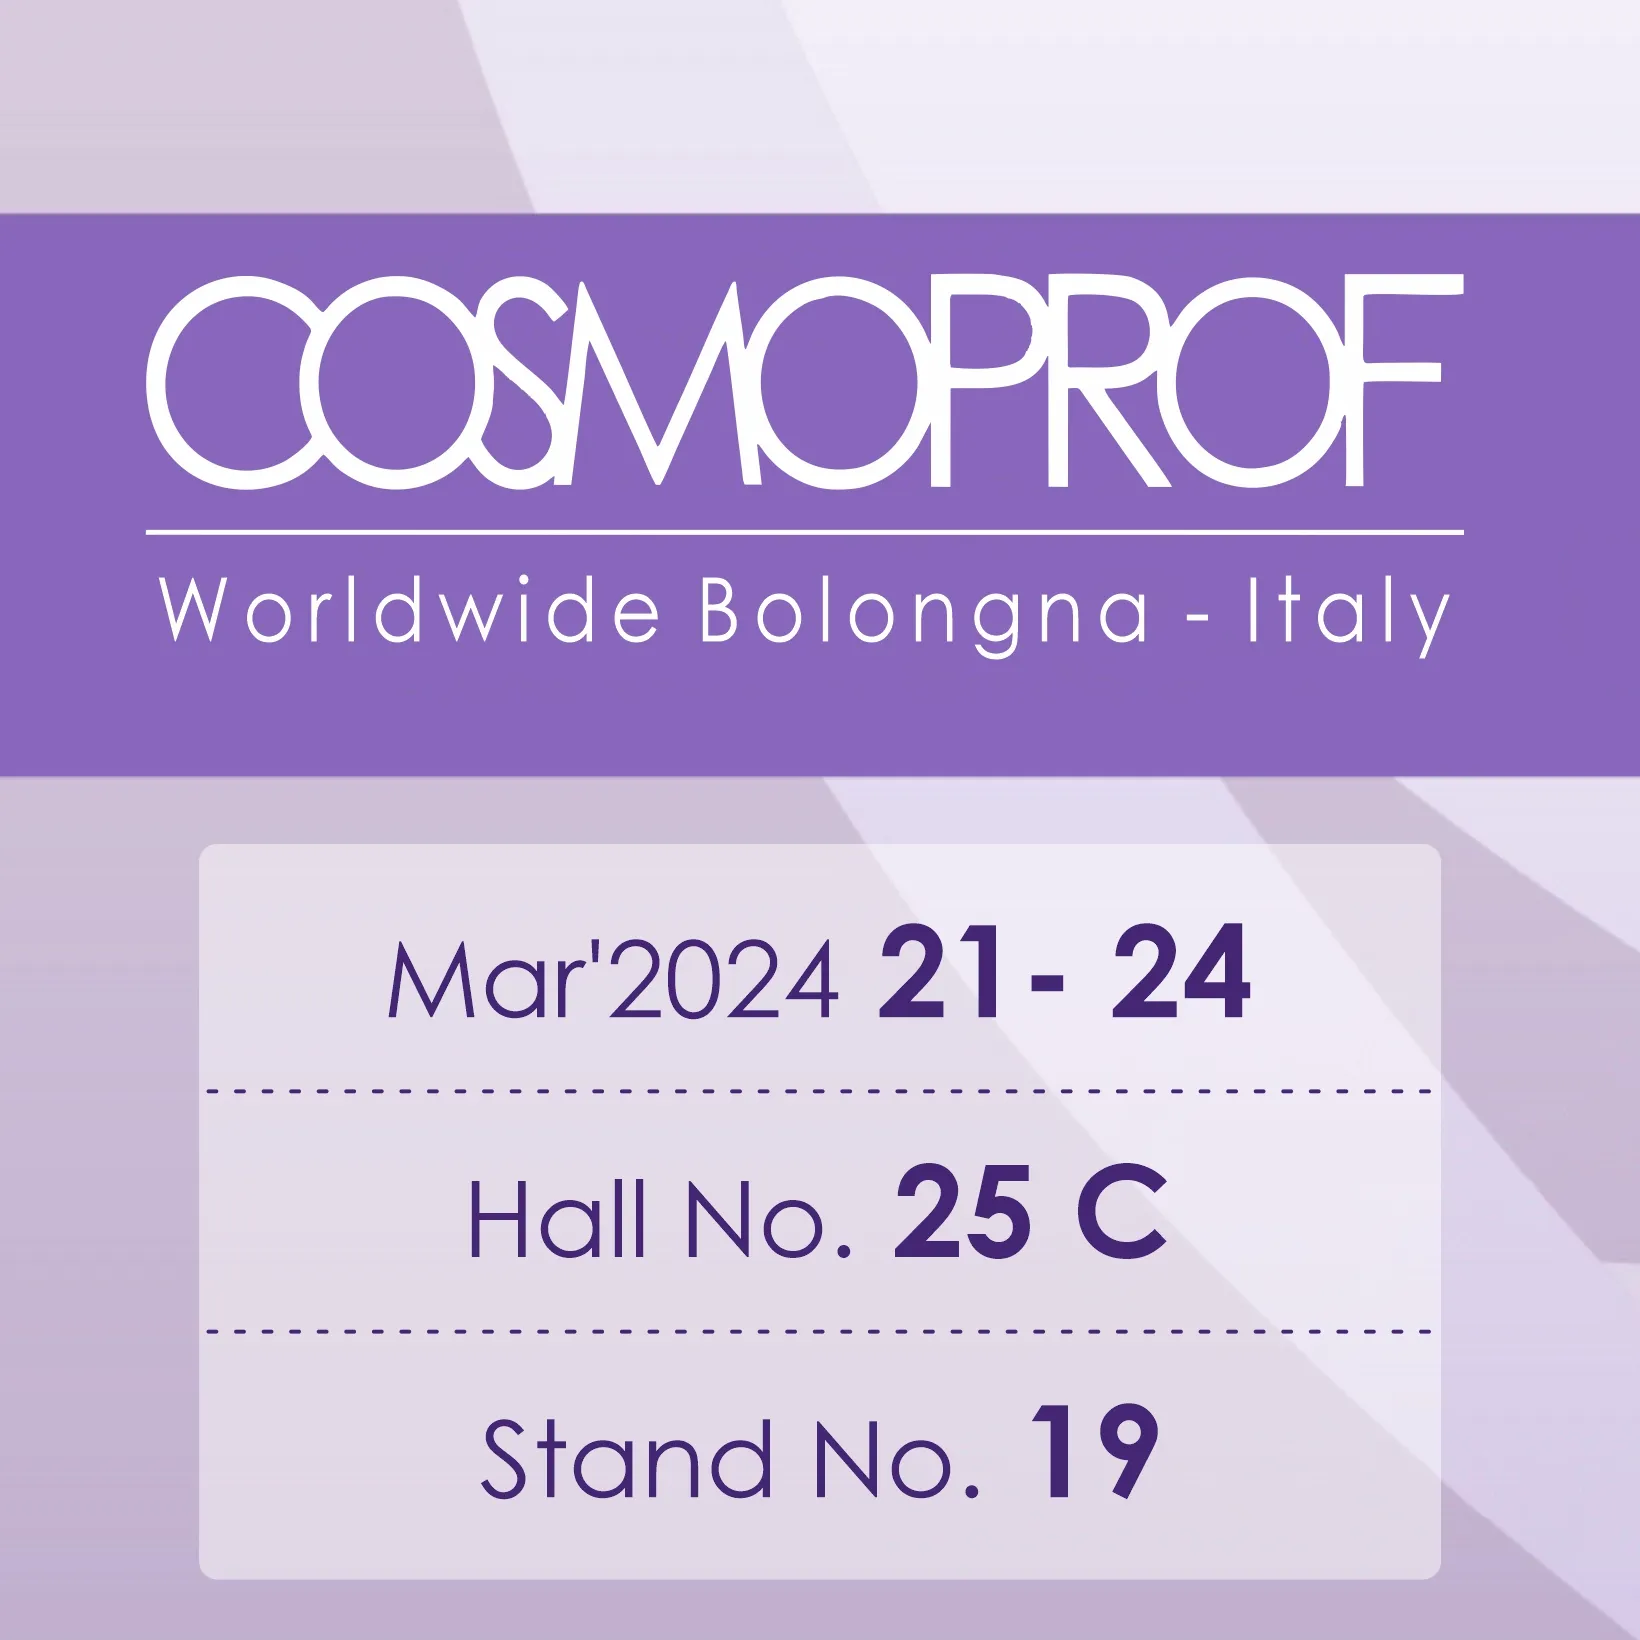 cosmoprof worldwide bologna mobile banner - www.dkihenna.com